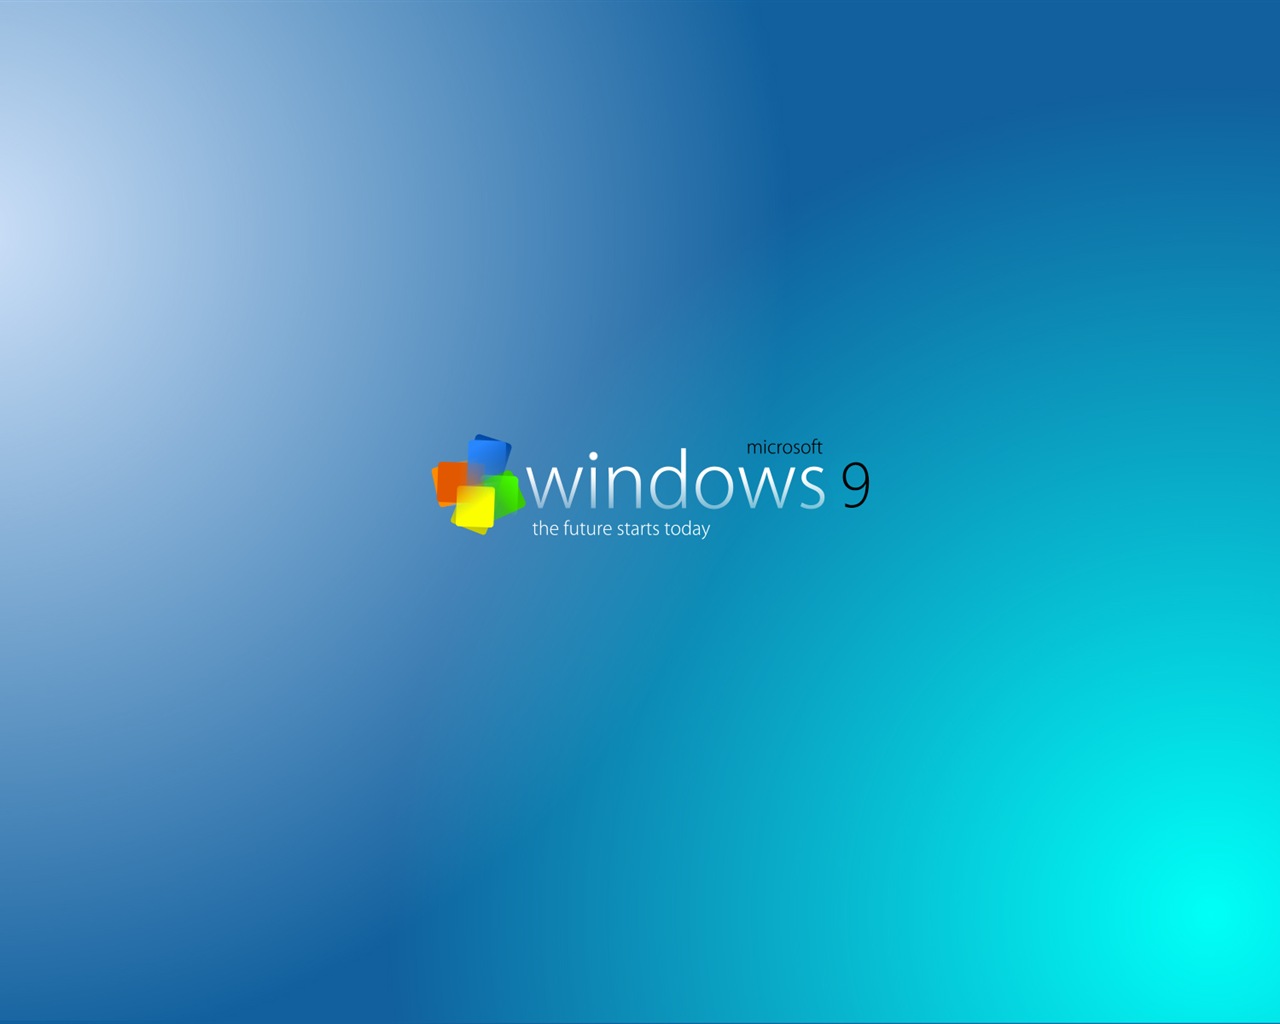 Microsoft Windowsの9システムテーマのHD壁紙 #16 - 1280x1024